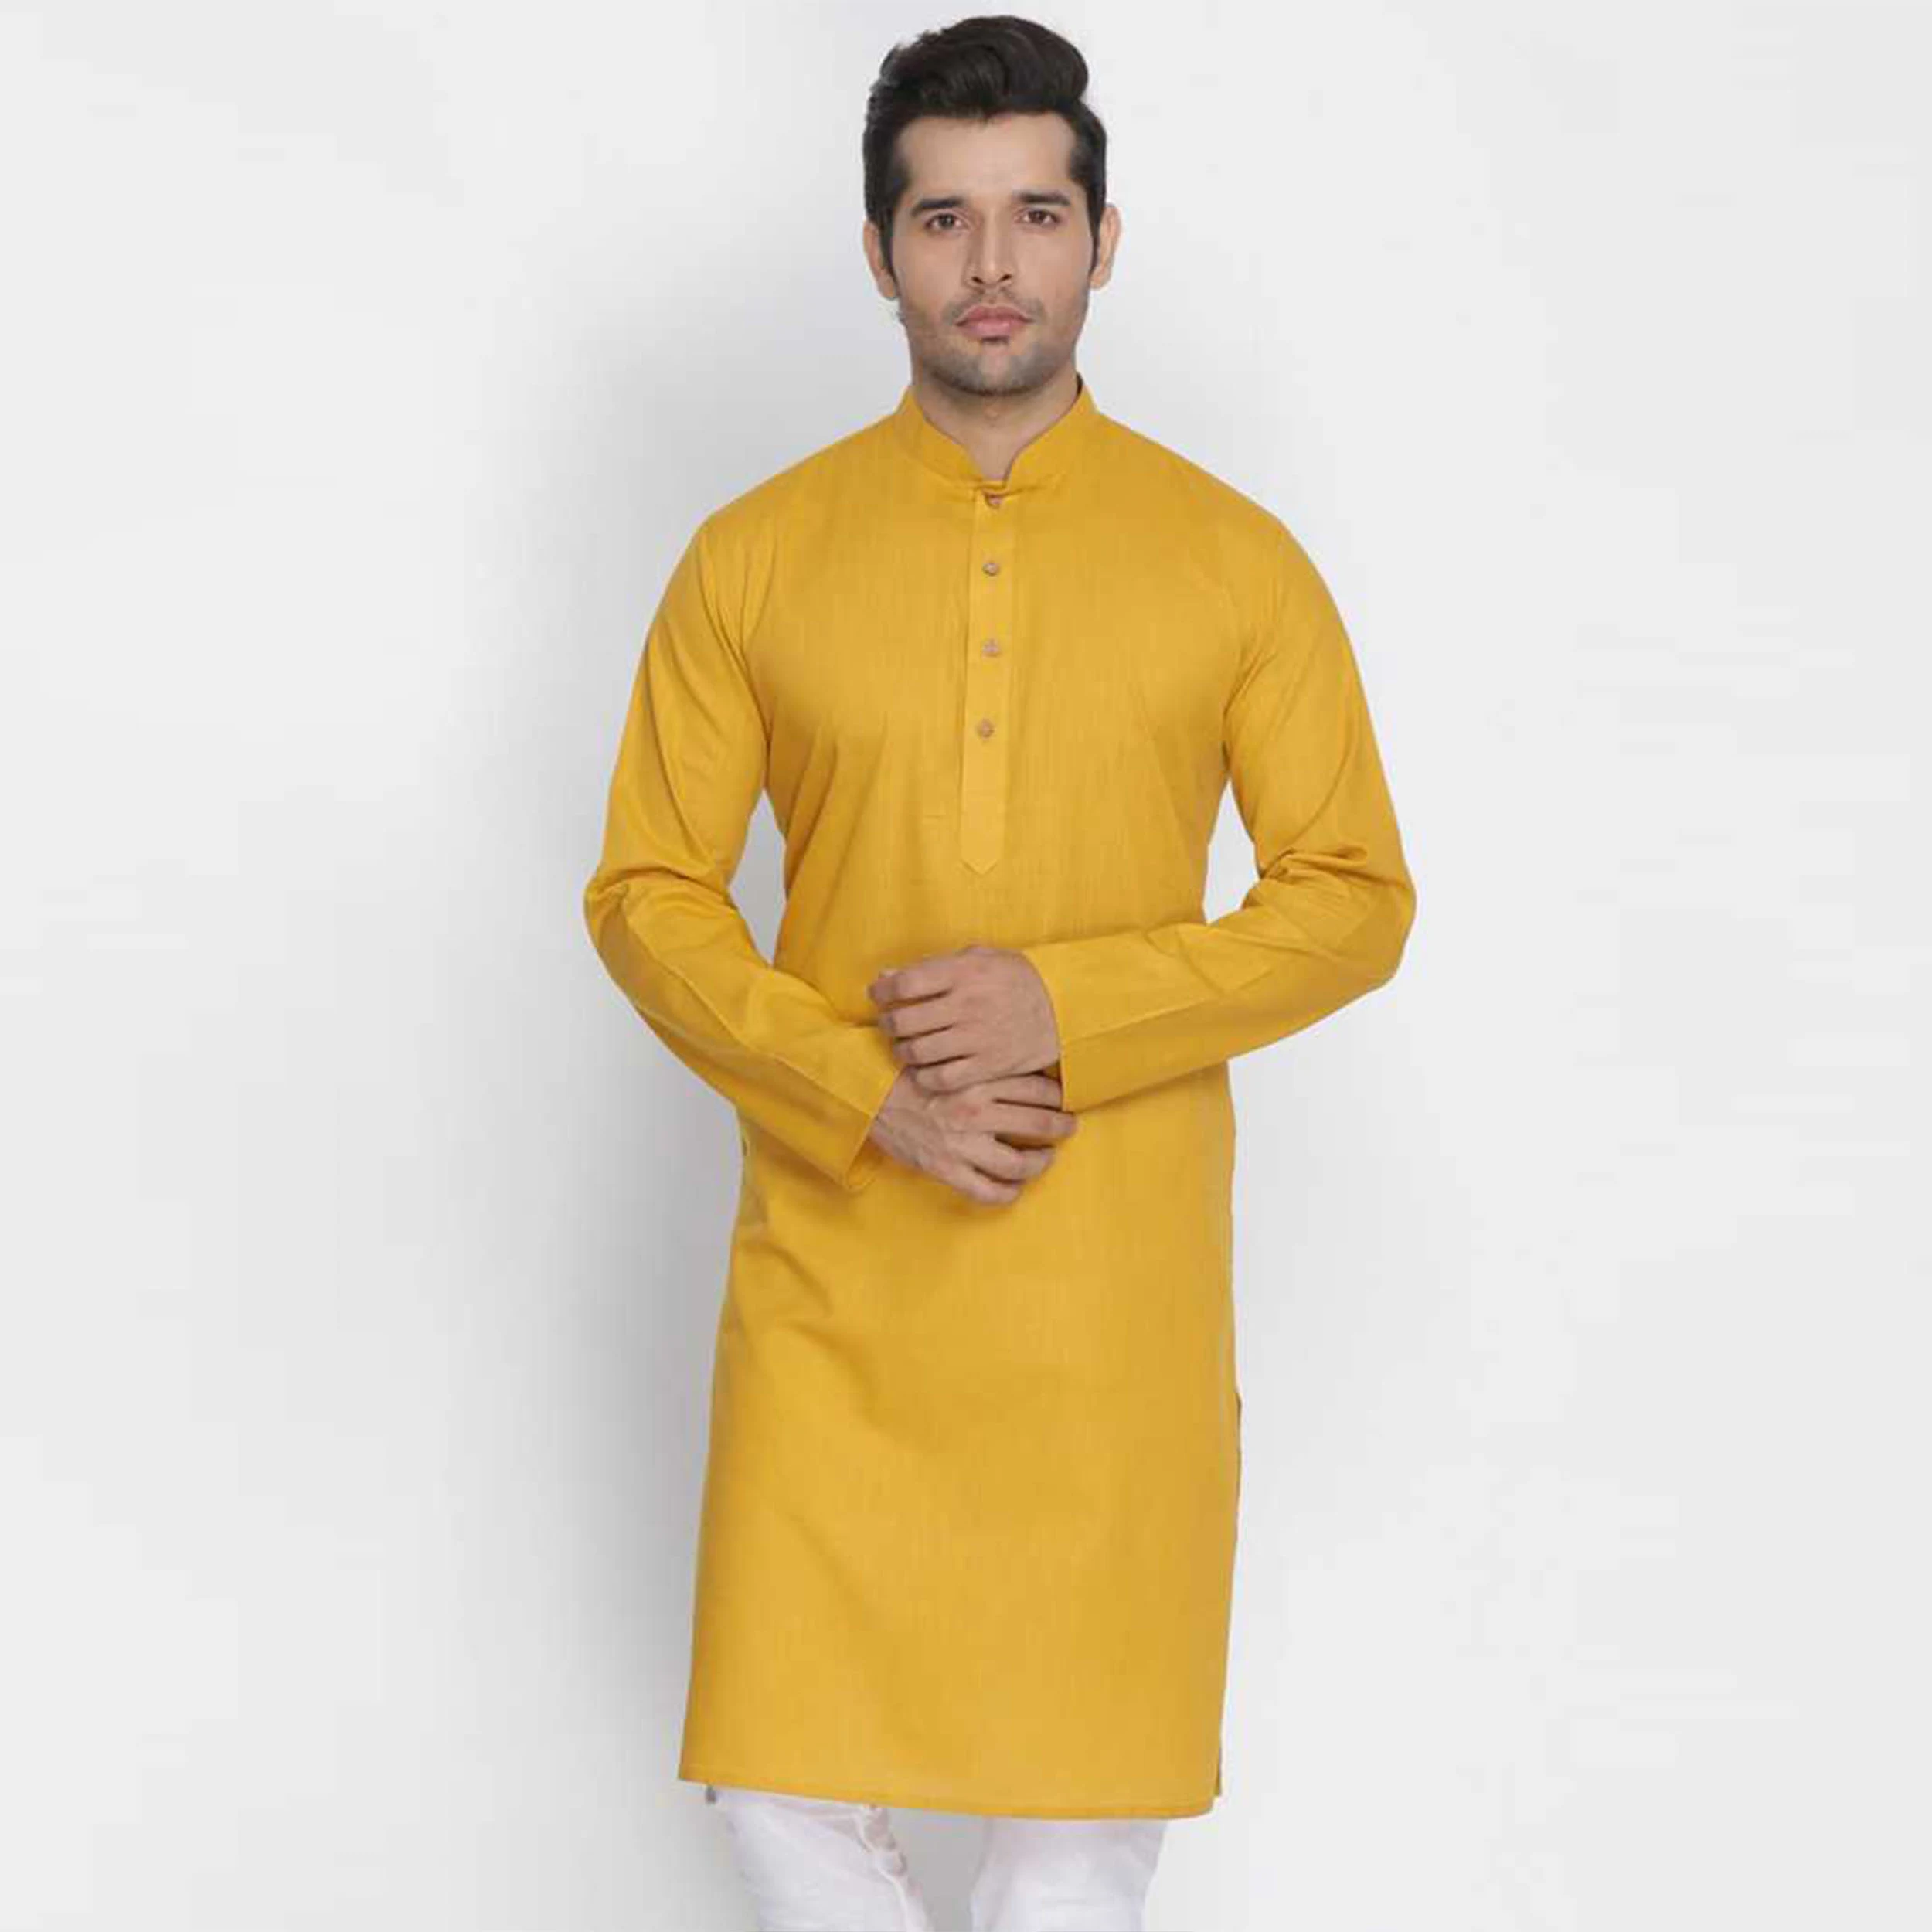 হলুদ পাঞ্জাবি ডিজাইন - Yellow Punjabi Designs - কালারফুল পাঞ্জাবি ডিজাইন - Colorful Punjabi Designs - NeotericIT.com